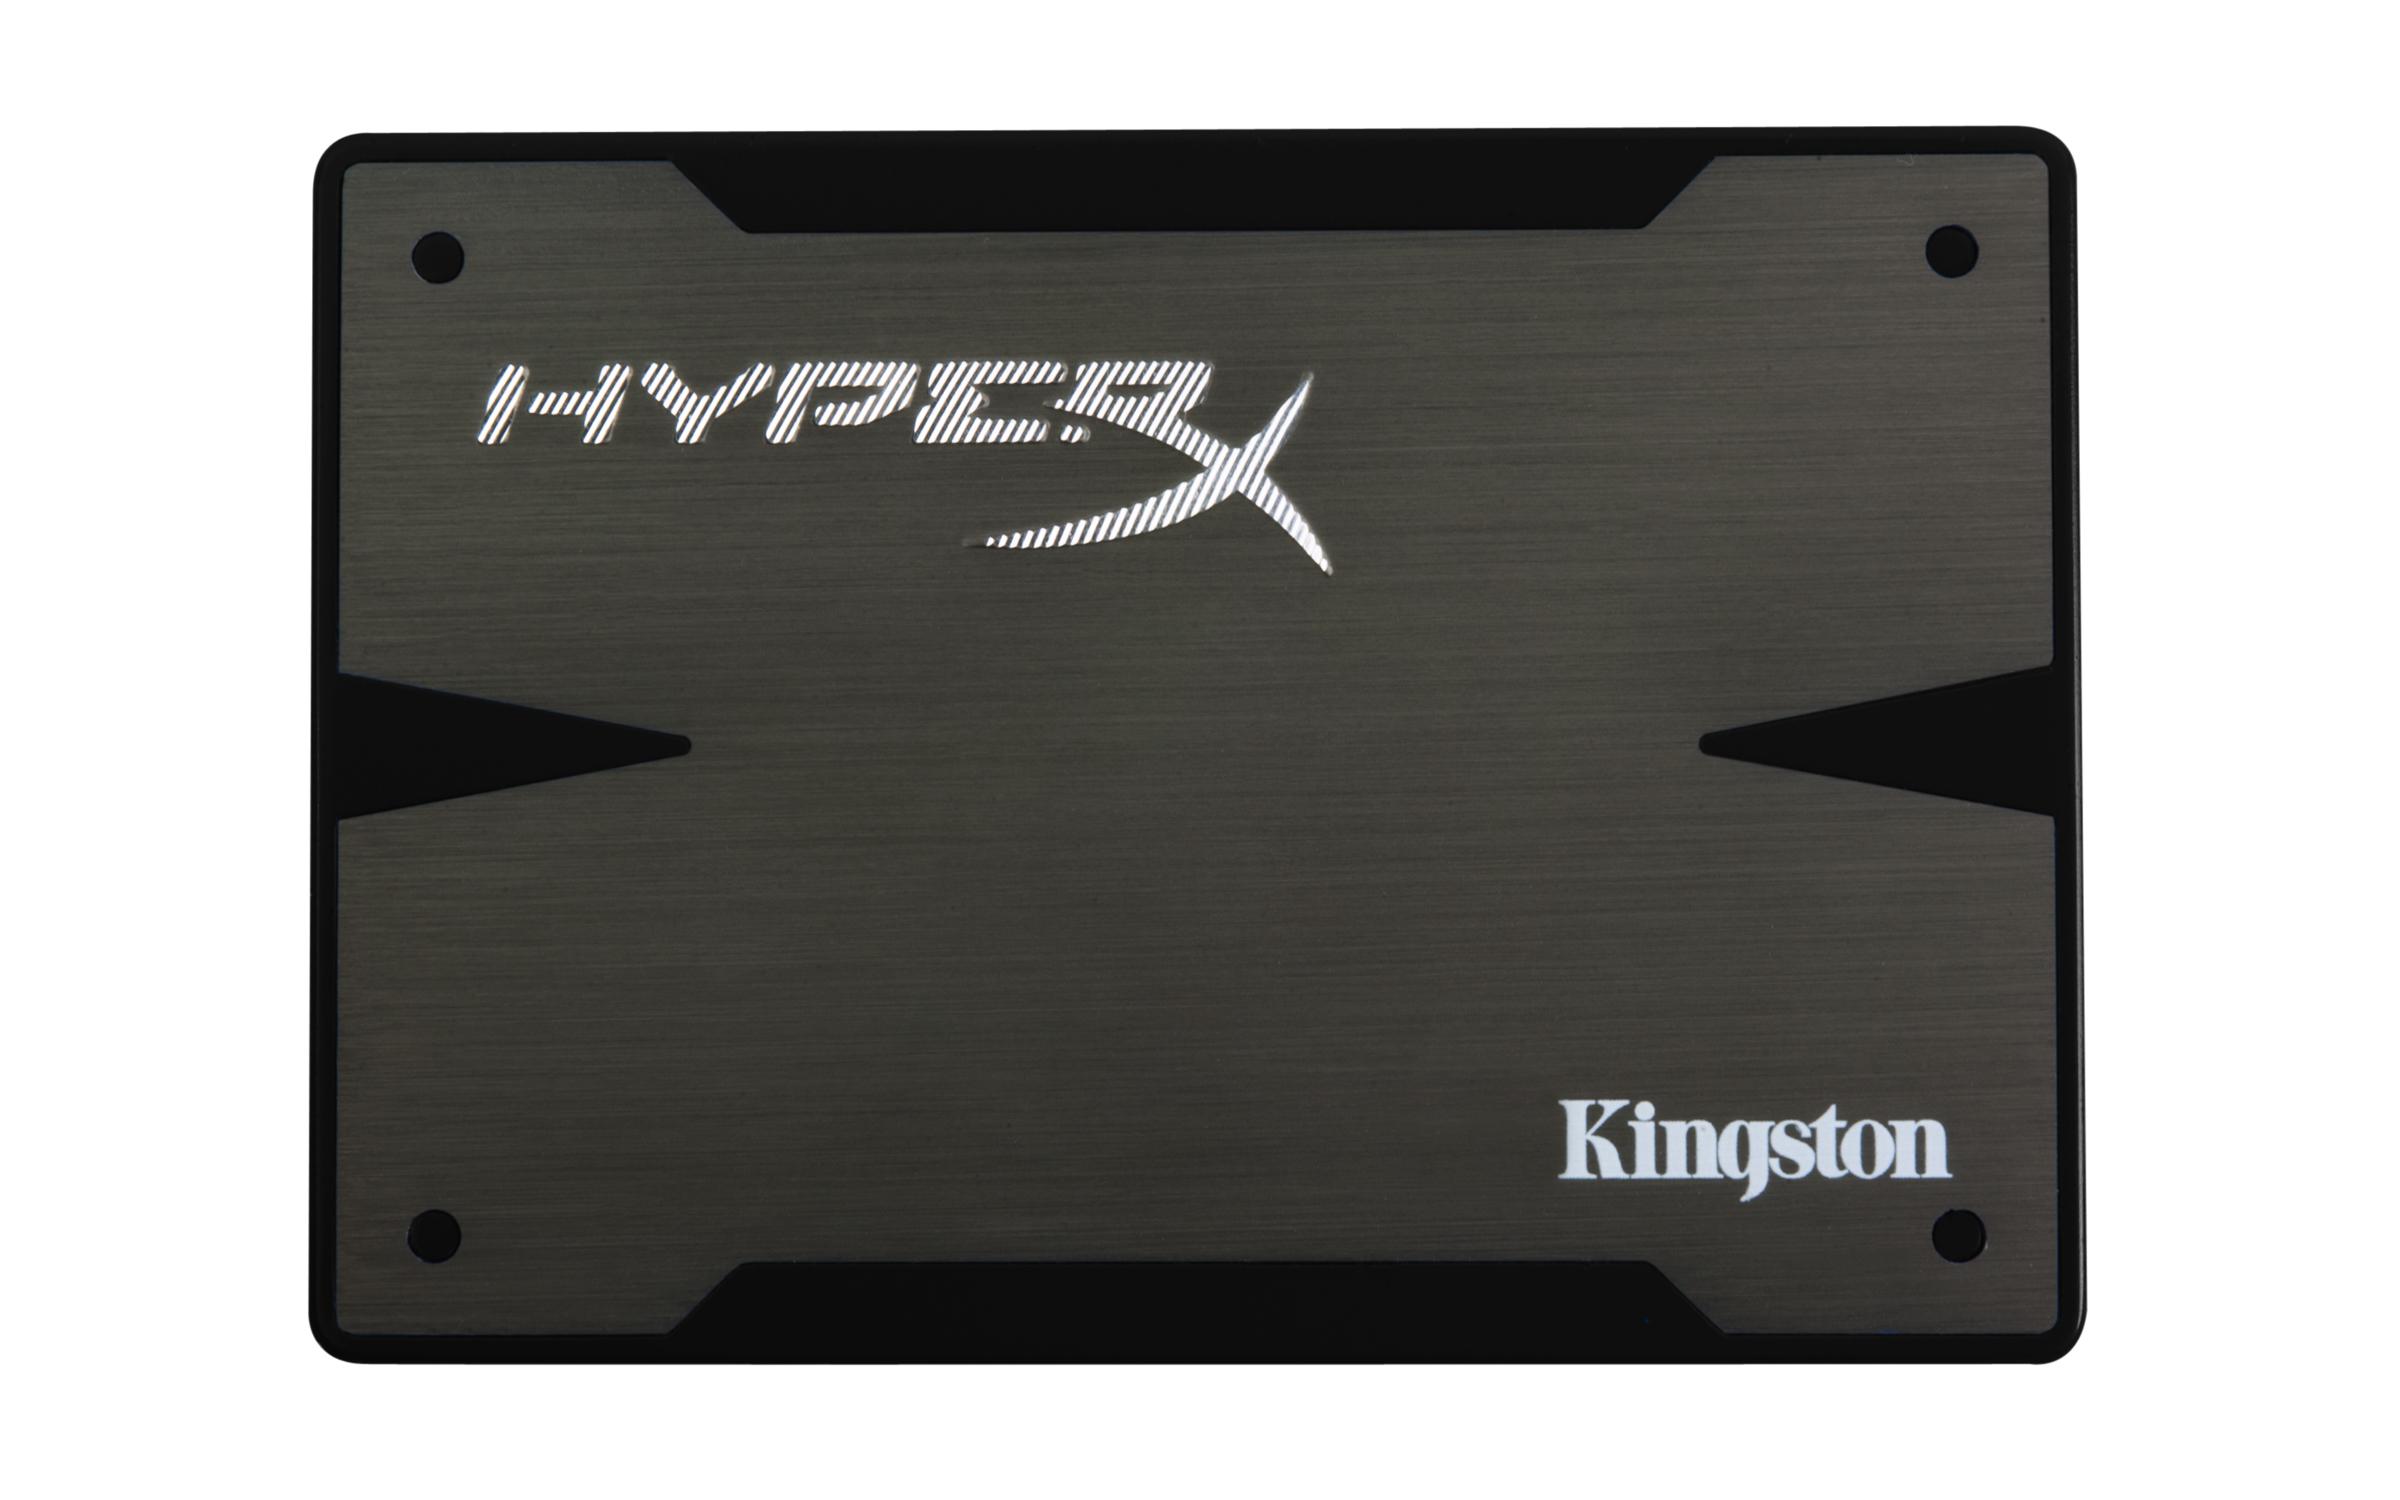 Foto Kingston hyperx 3k ssd 120gb, 120 gb, 63.5 mm (2.5 